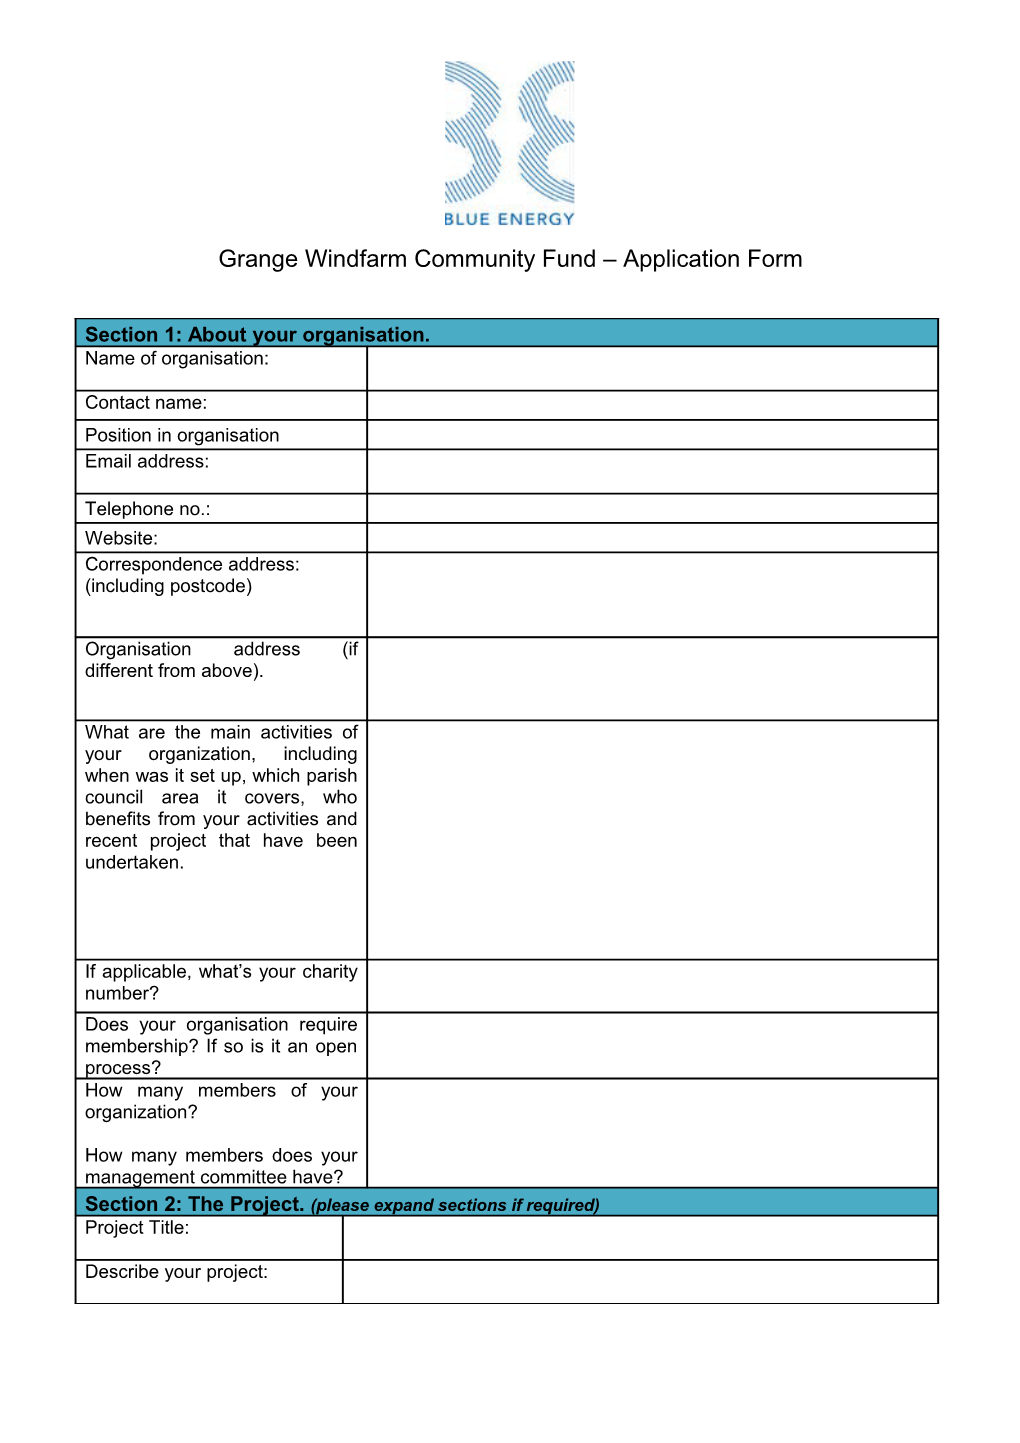 Grange Windfarm Community Fund Application Form